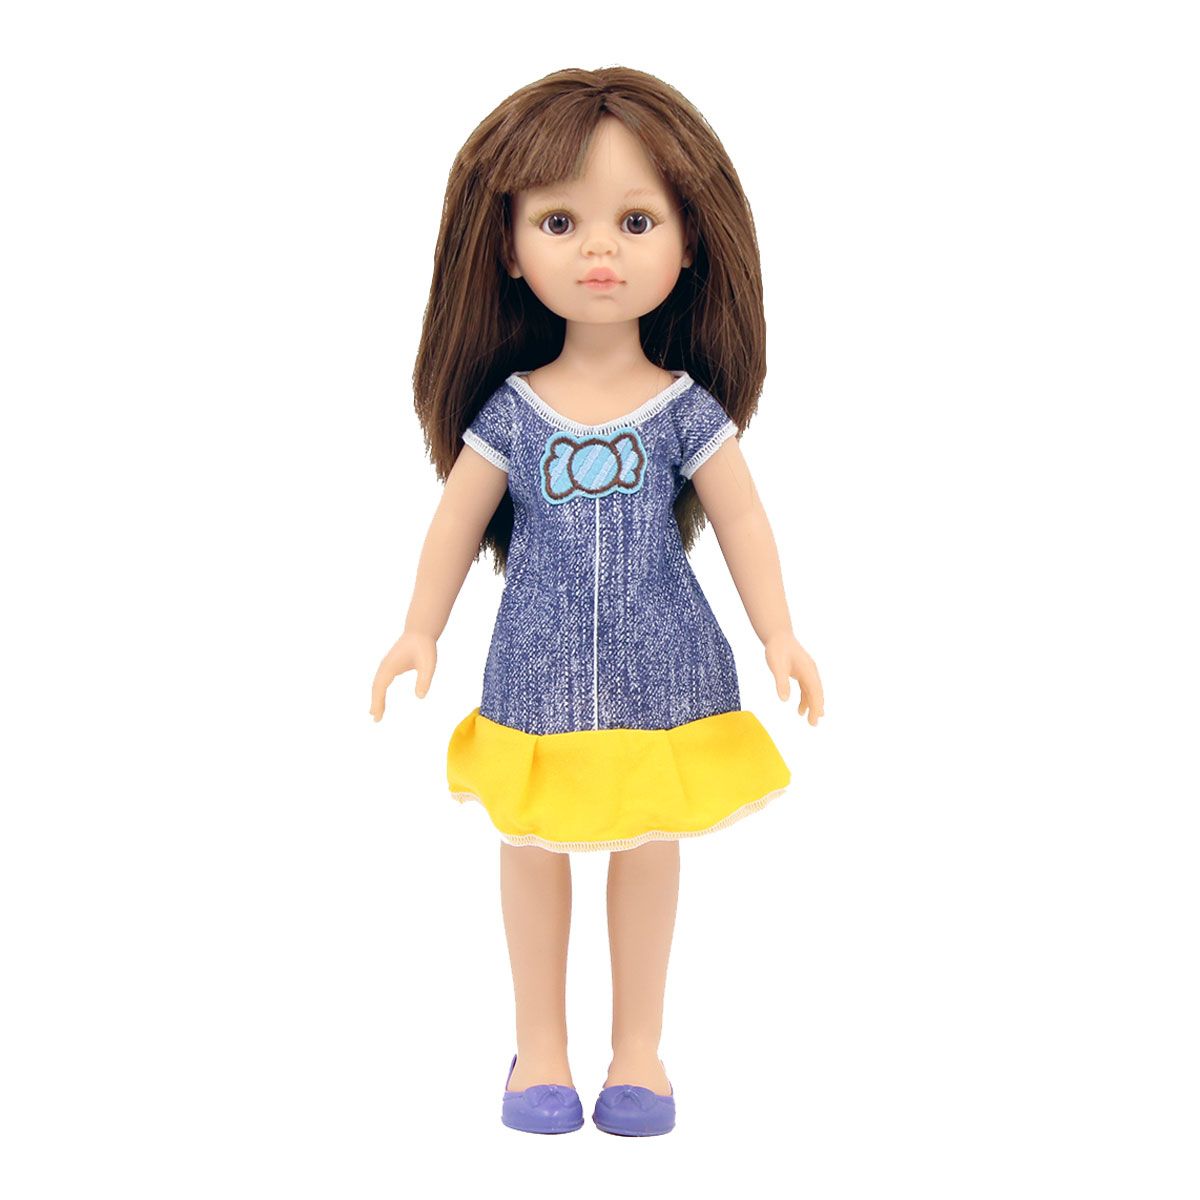 Одежда Dolls Accessories для Паола Рейна и других кукол ростом 32 см Сарафан